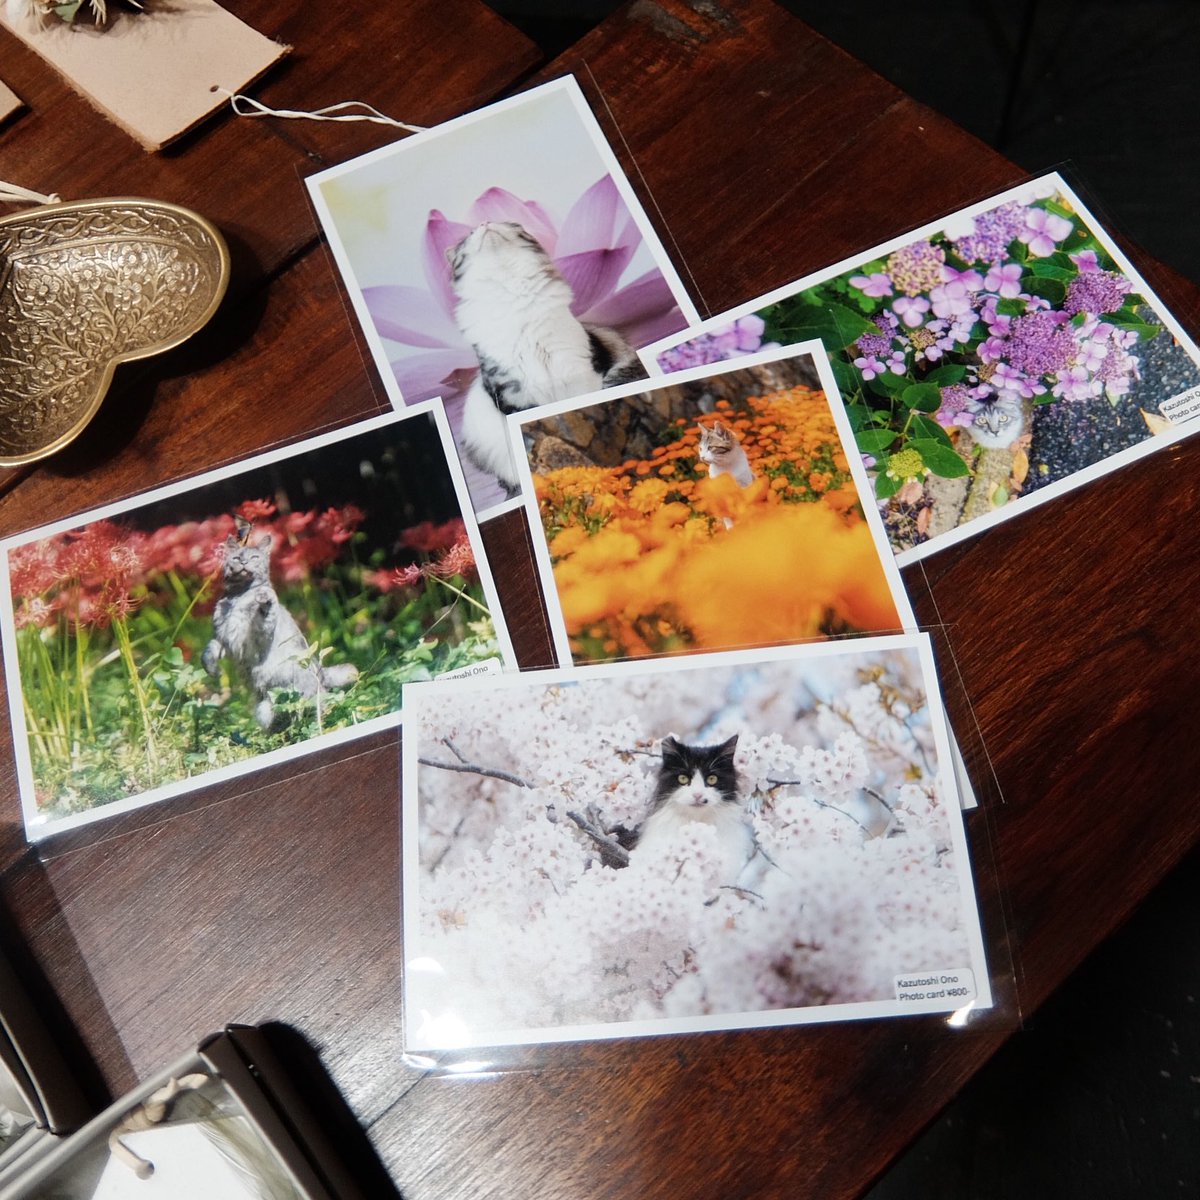 ネコ写真家 小野一俊さん @kazutoshi_ono_ のポストカード。 写真展で好評だったので、お花に関連するものだけ少量ですが引き続き販売しています。 期間中、ご来場いただけなかったお客様はぜひご利用ください。